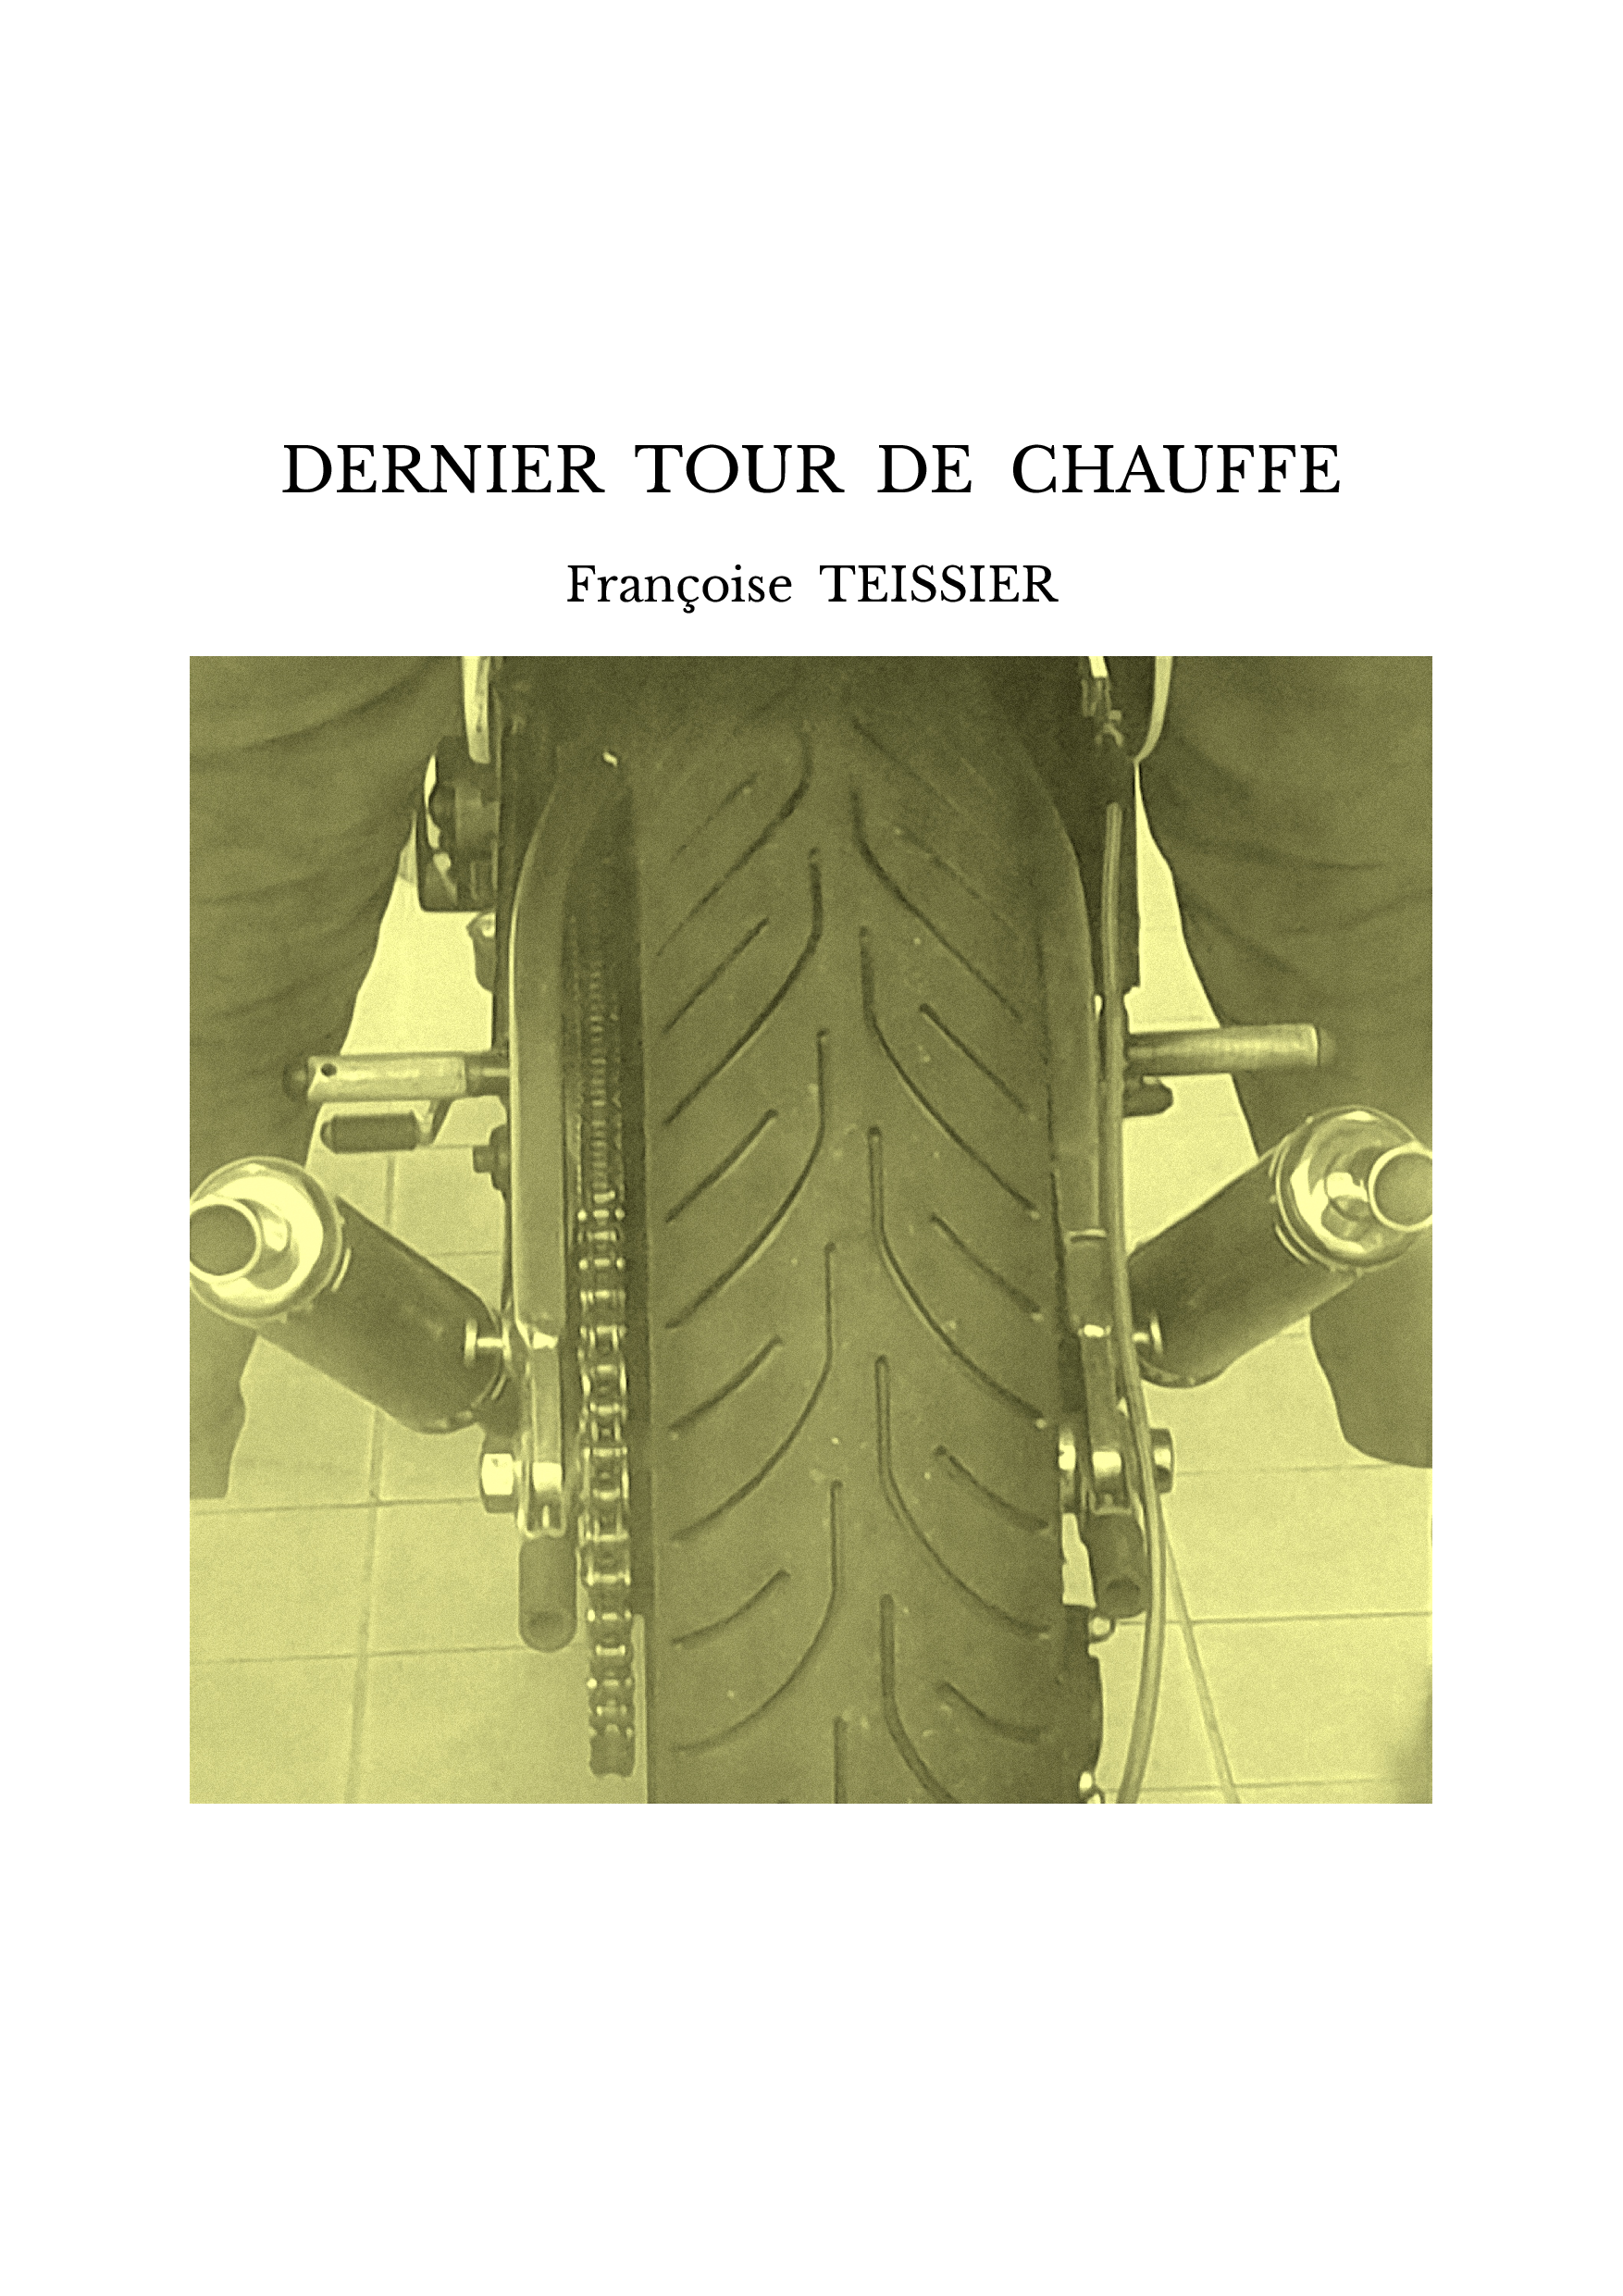 DERNIER TOUR DE CHAUFFE